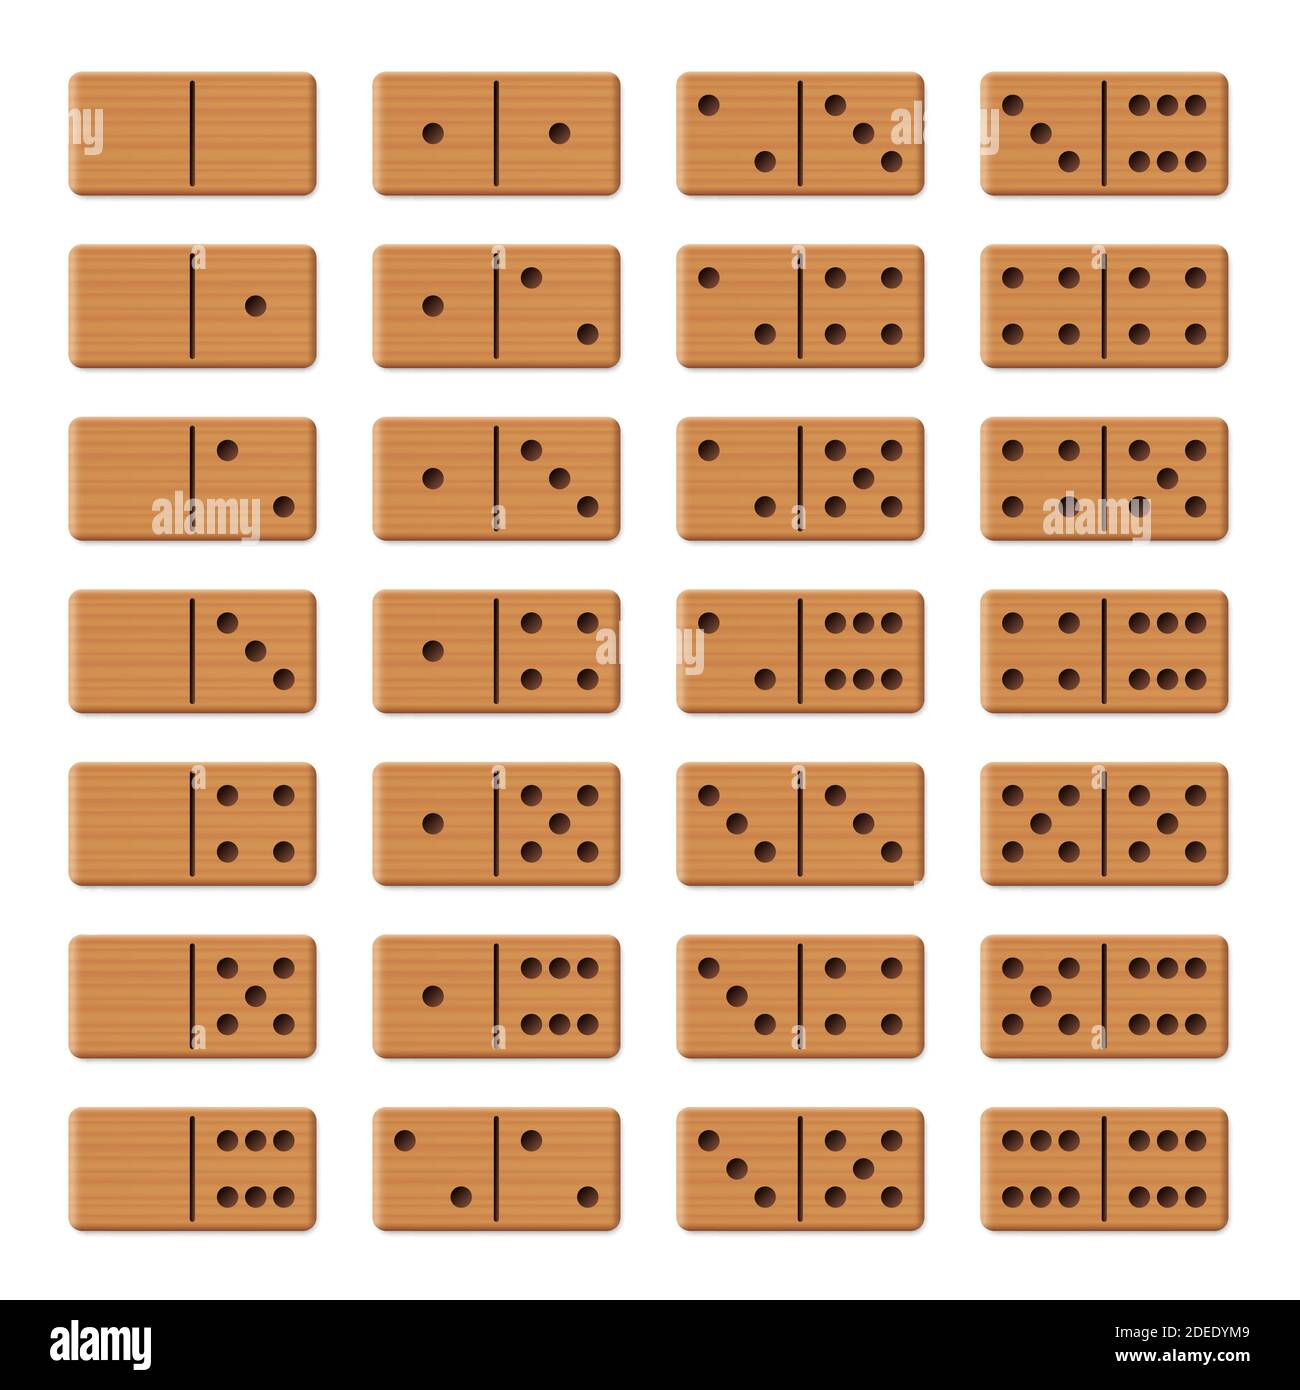 Dominoes - komplettes Spielset, Sammlung von 28 angeordneten Holz-Strukturfliesen - Illustration auf weißem Hintergrund. Stockfoto